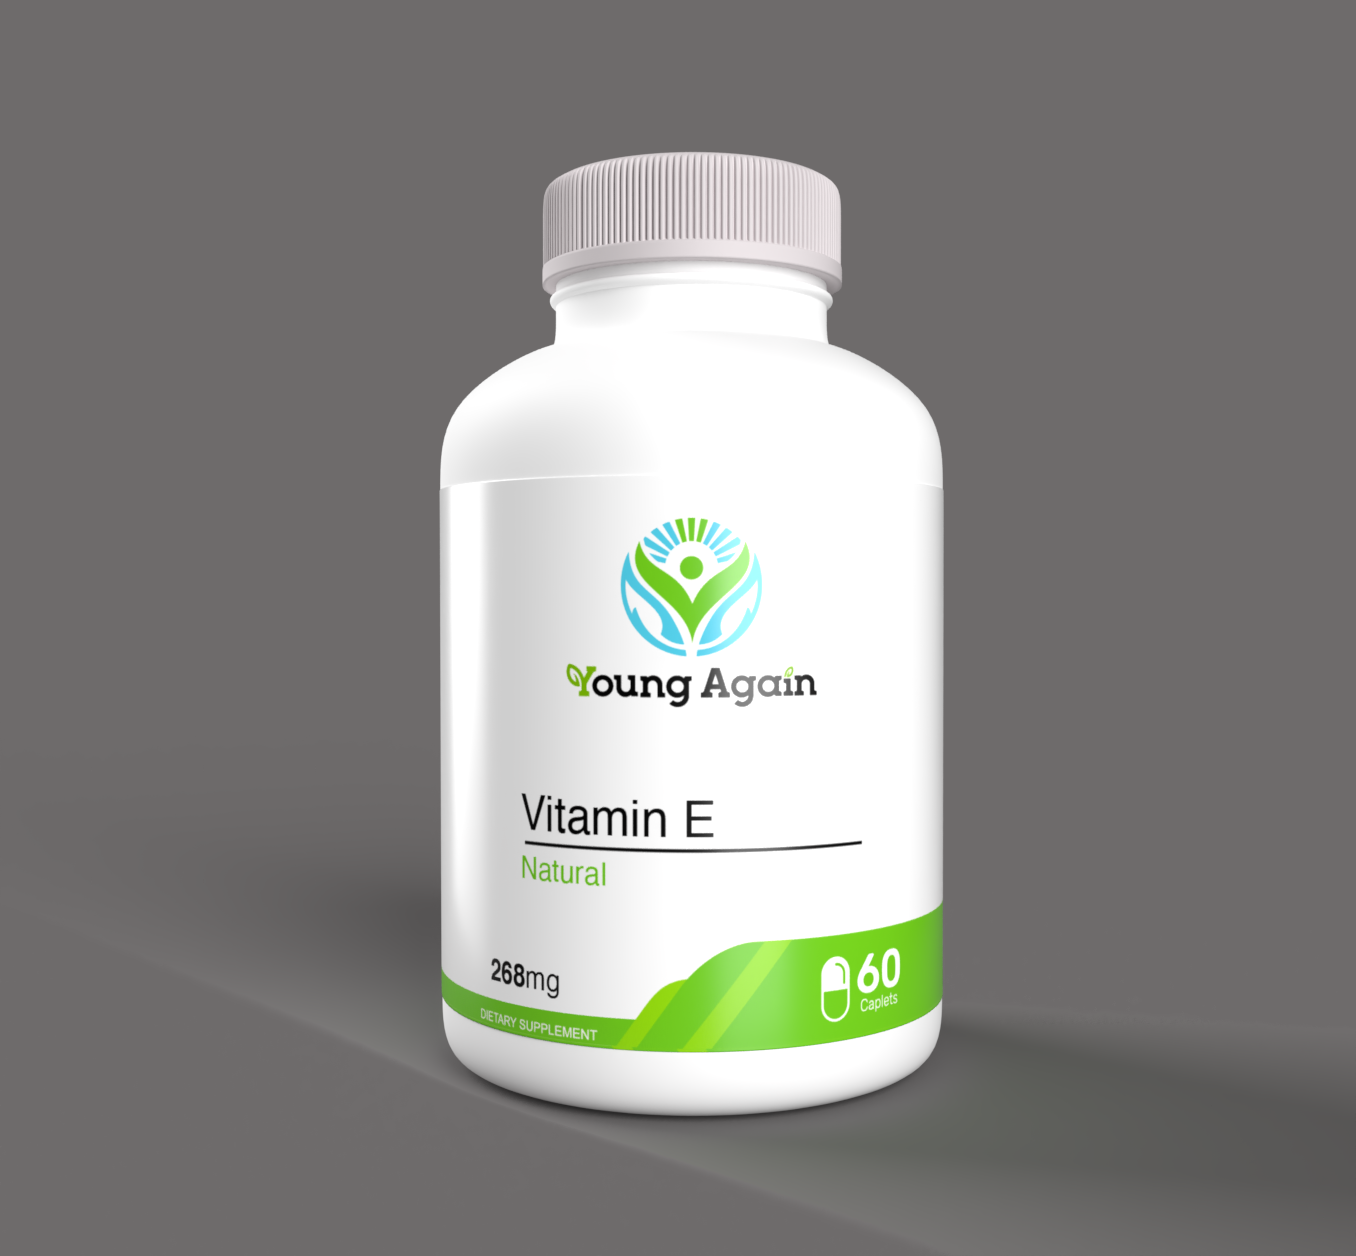 Vitamin E supplement